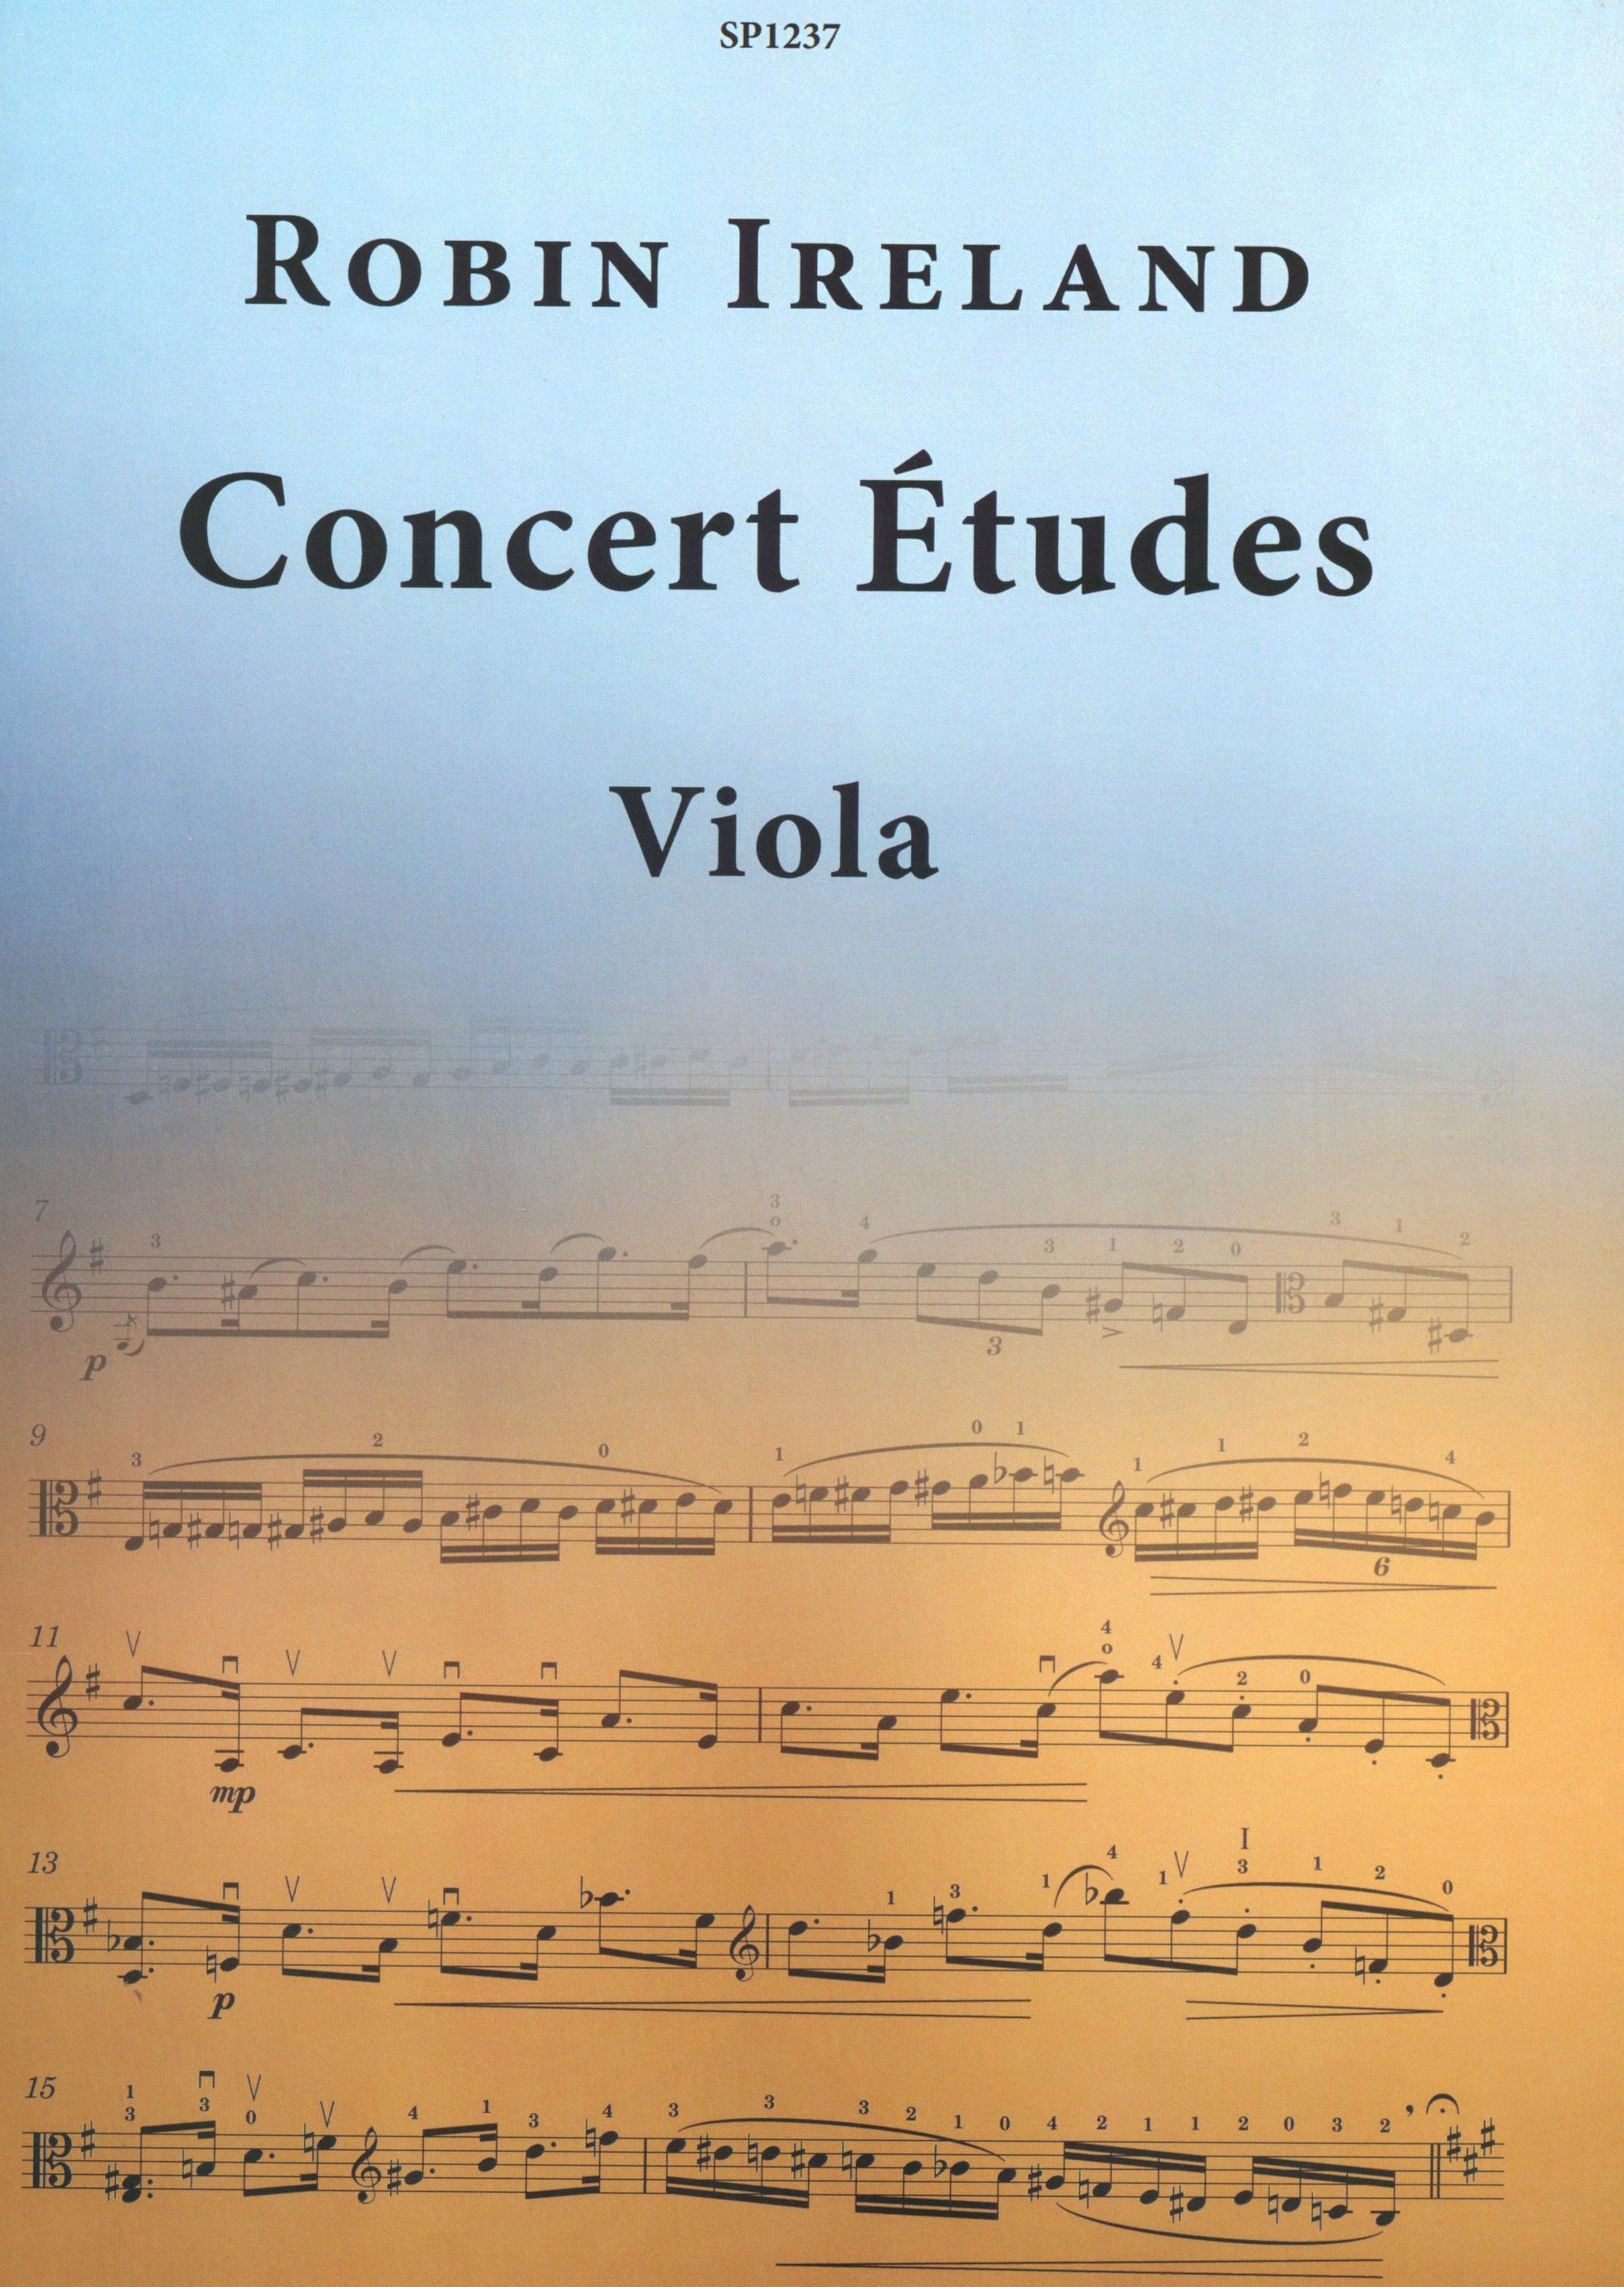 R. Ireland: Concert Études for Viola